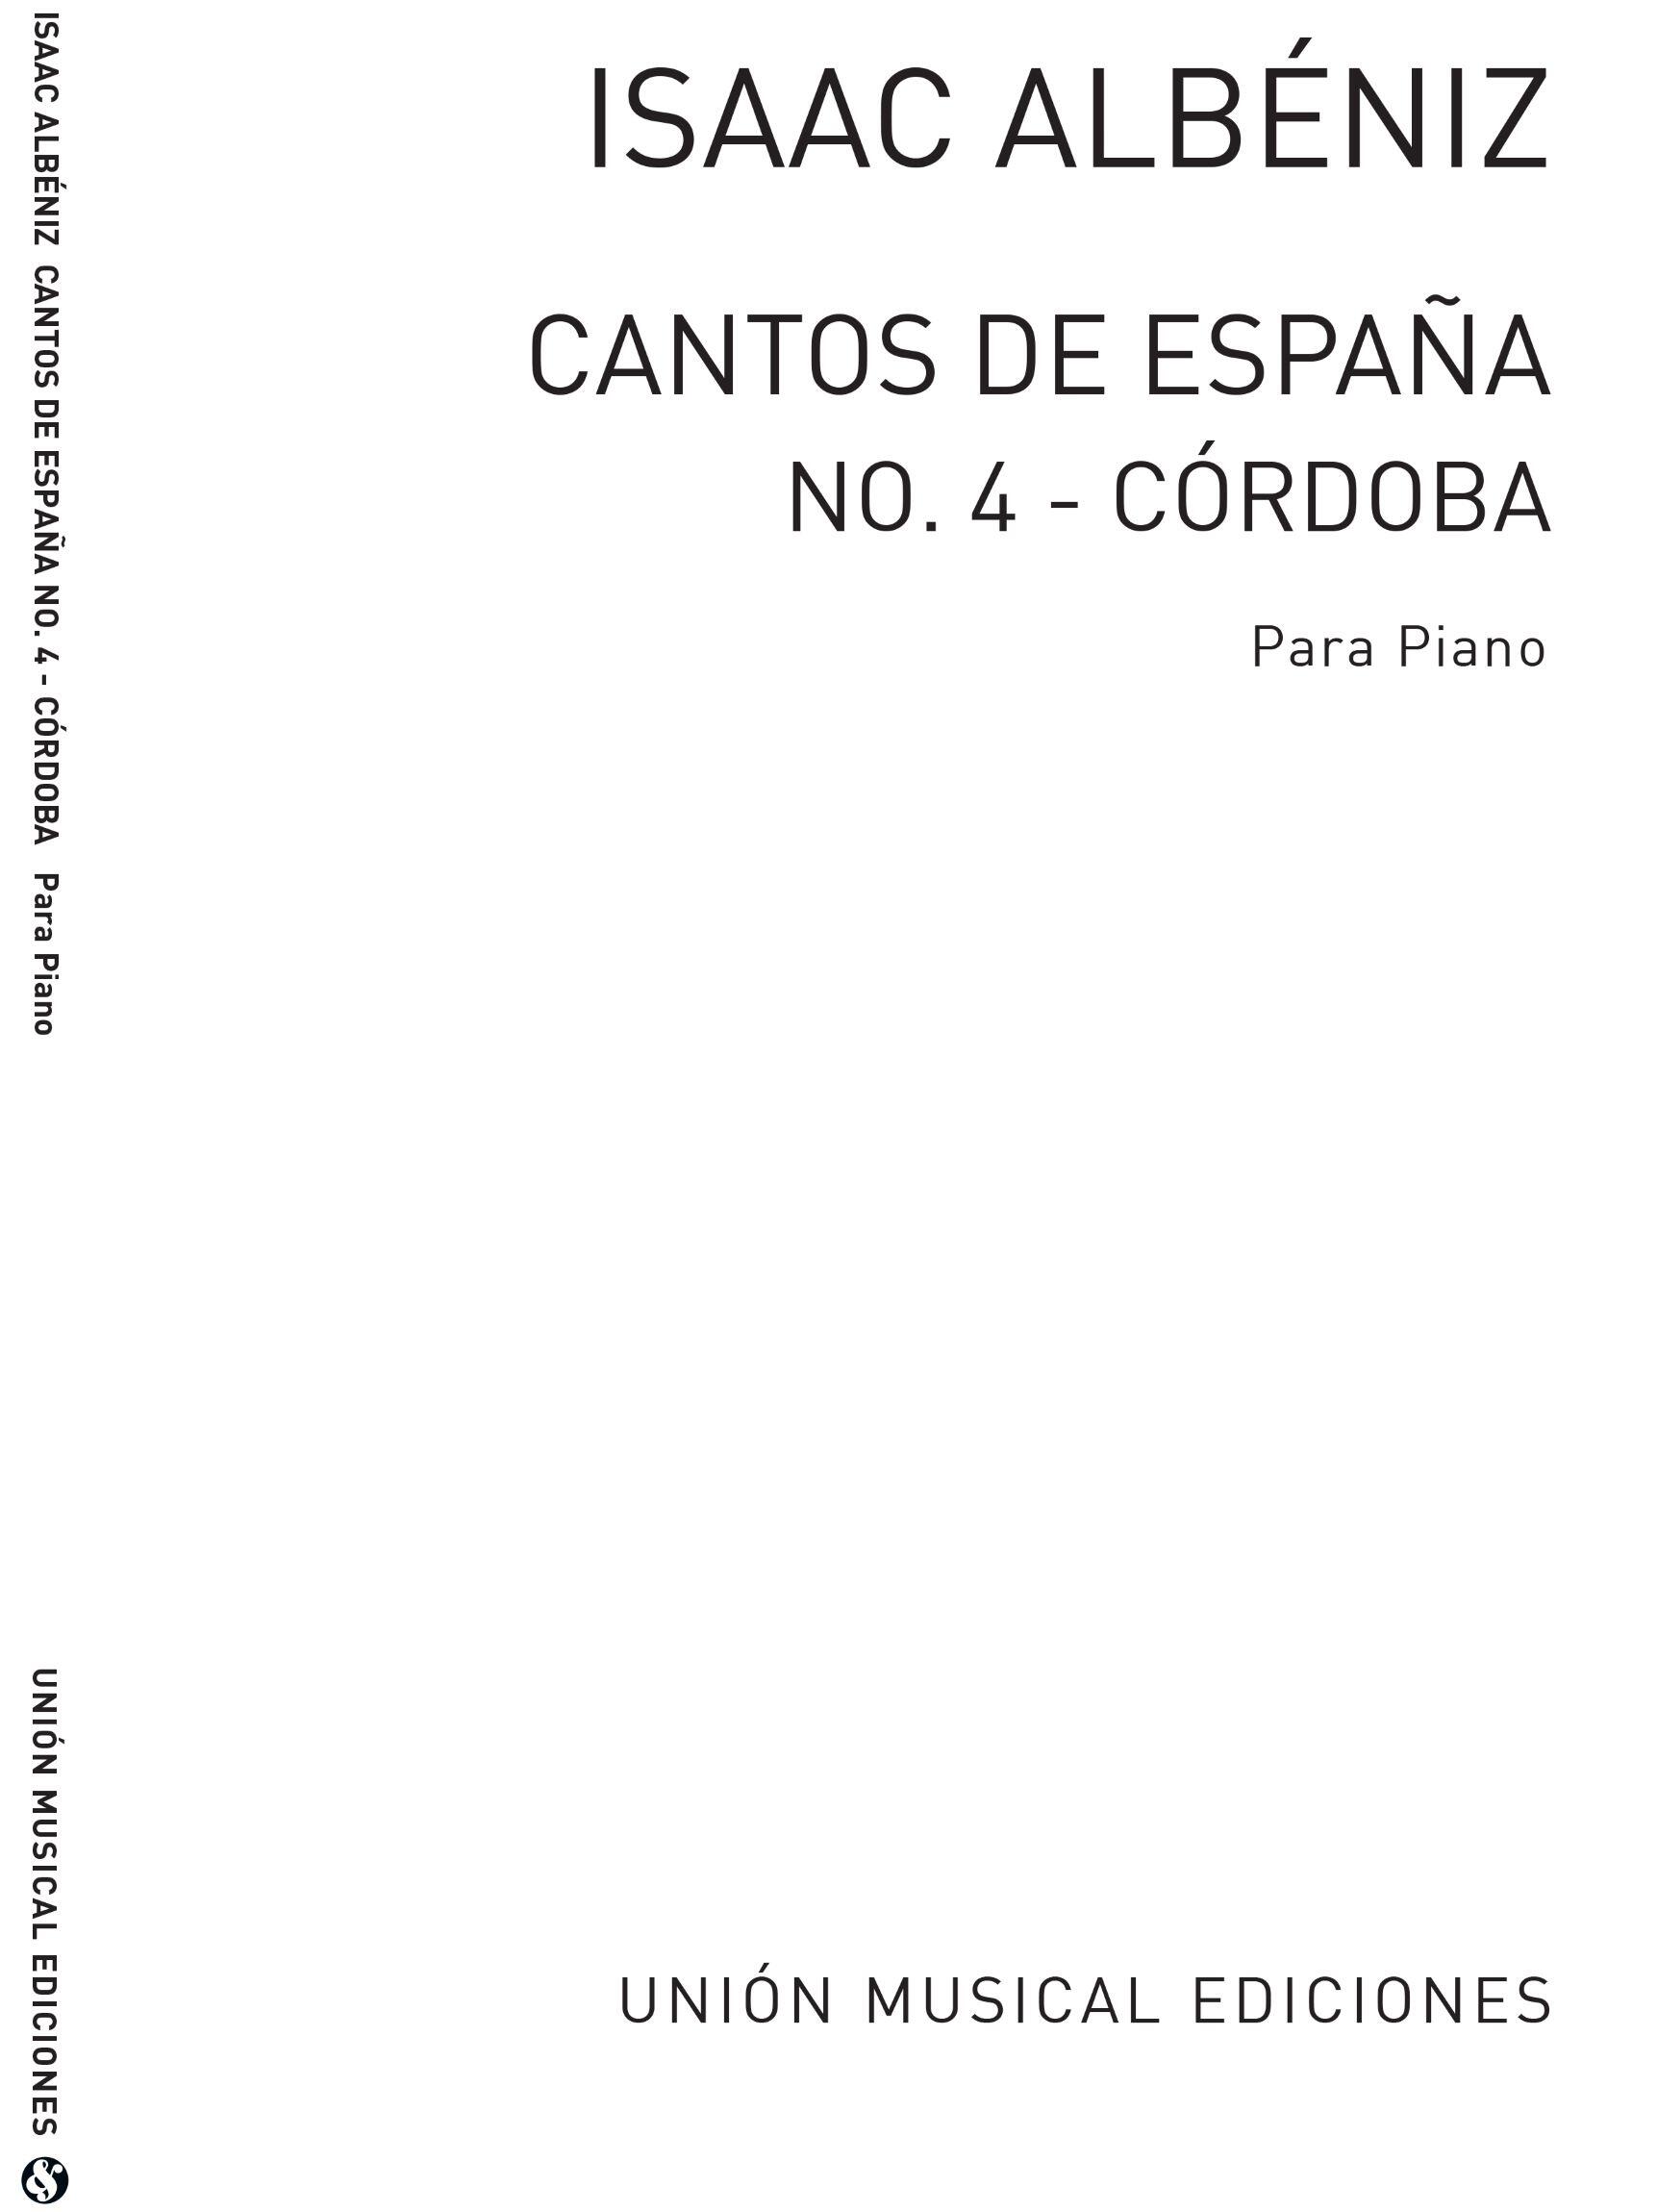 Albeniz Cordoba No.4 De Cantos De Espana Op.232 : photo 1